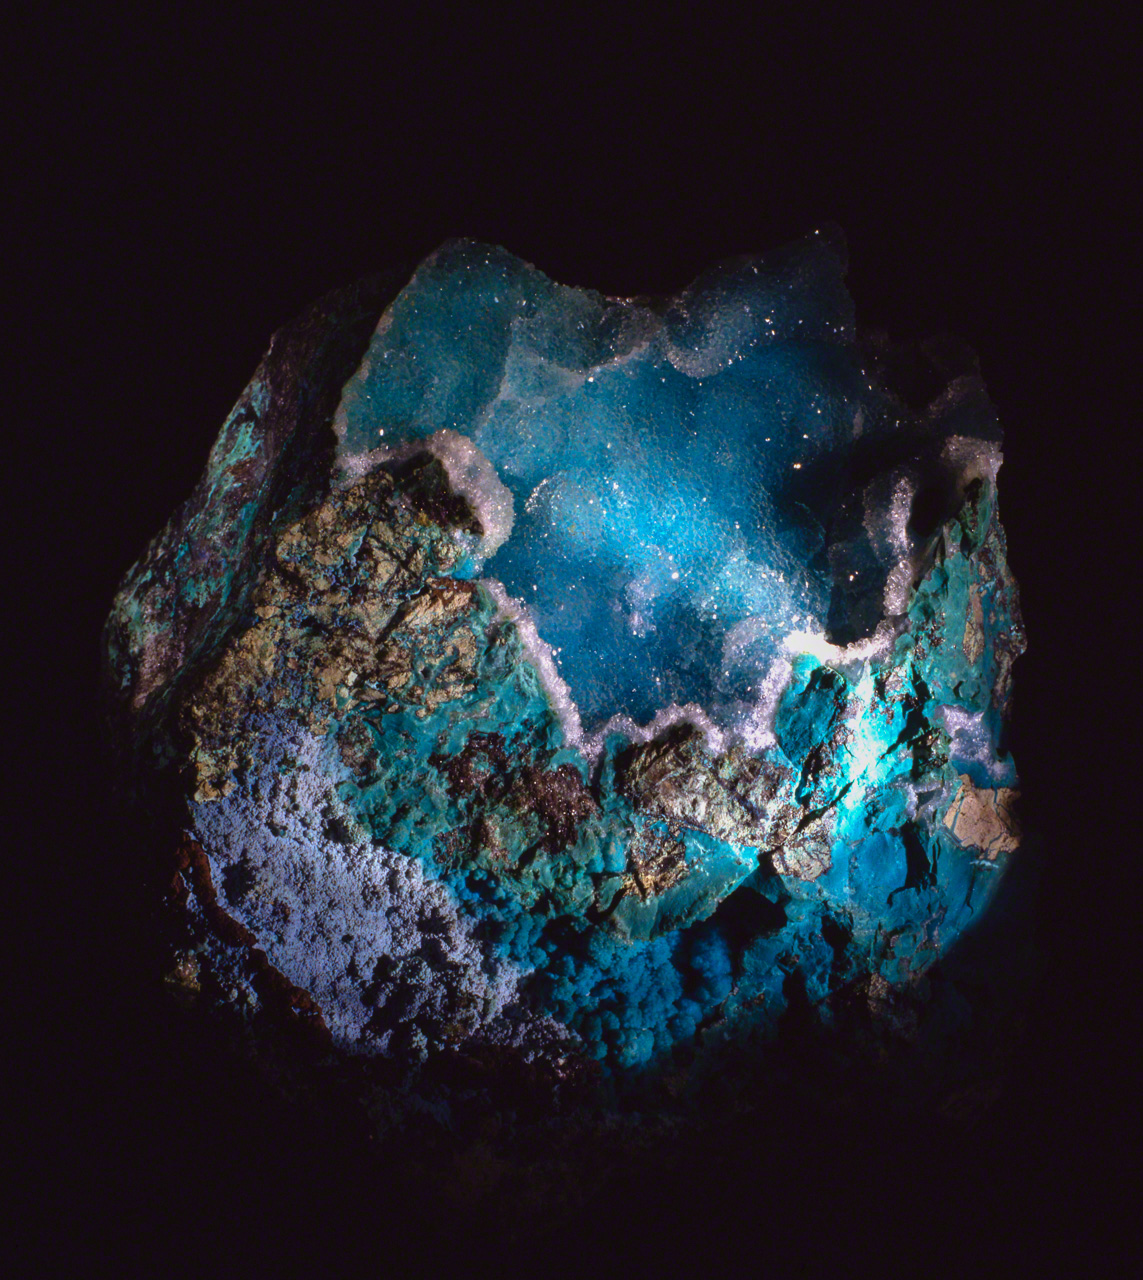 الكريزوكولا هو معدن غامض يمكن أن يحمل في بعض الأحيان تشابهًا غريبًا مع صورة كوكب الأرض المائي الأزرق الذي نراه من الفضاء. (© أونيشي ناروأكي)